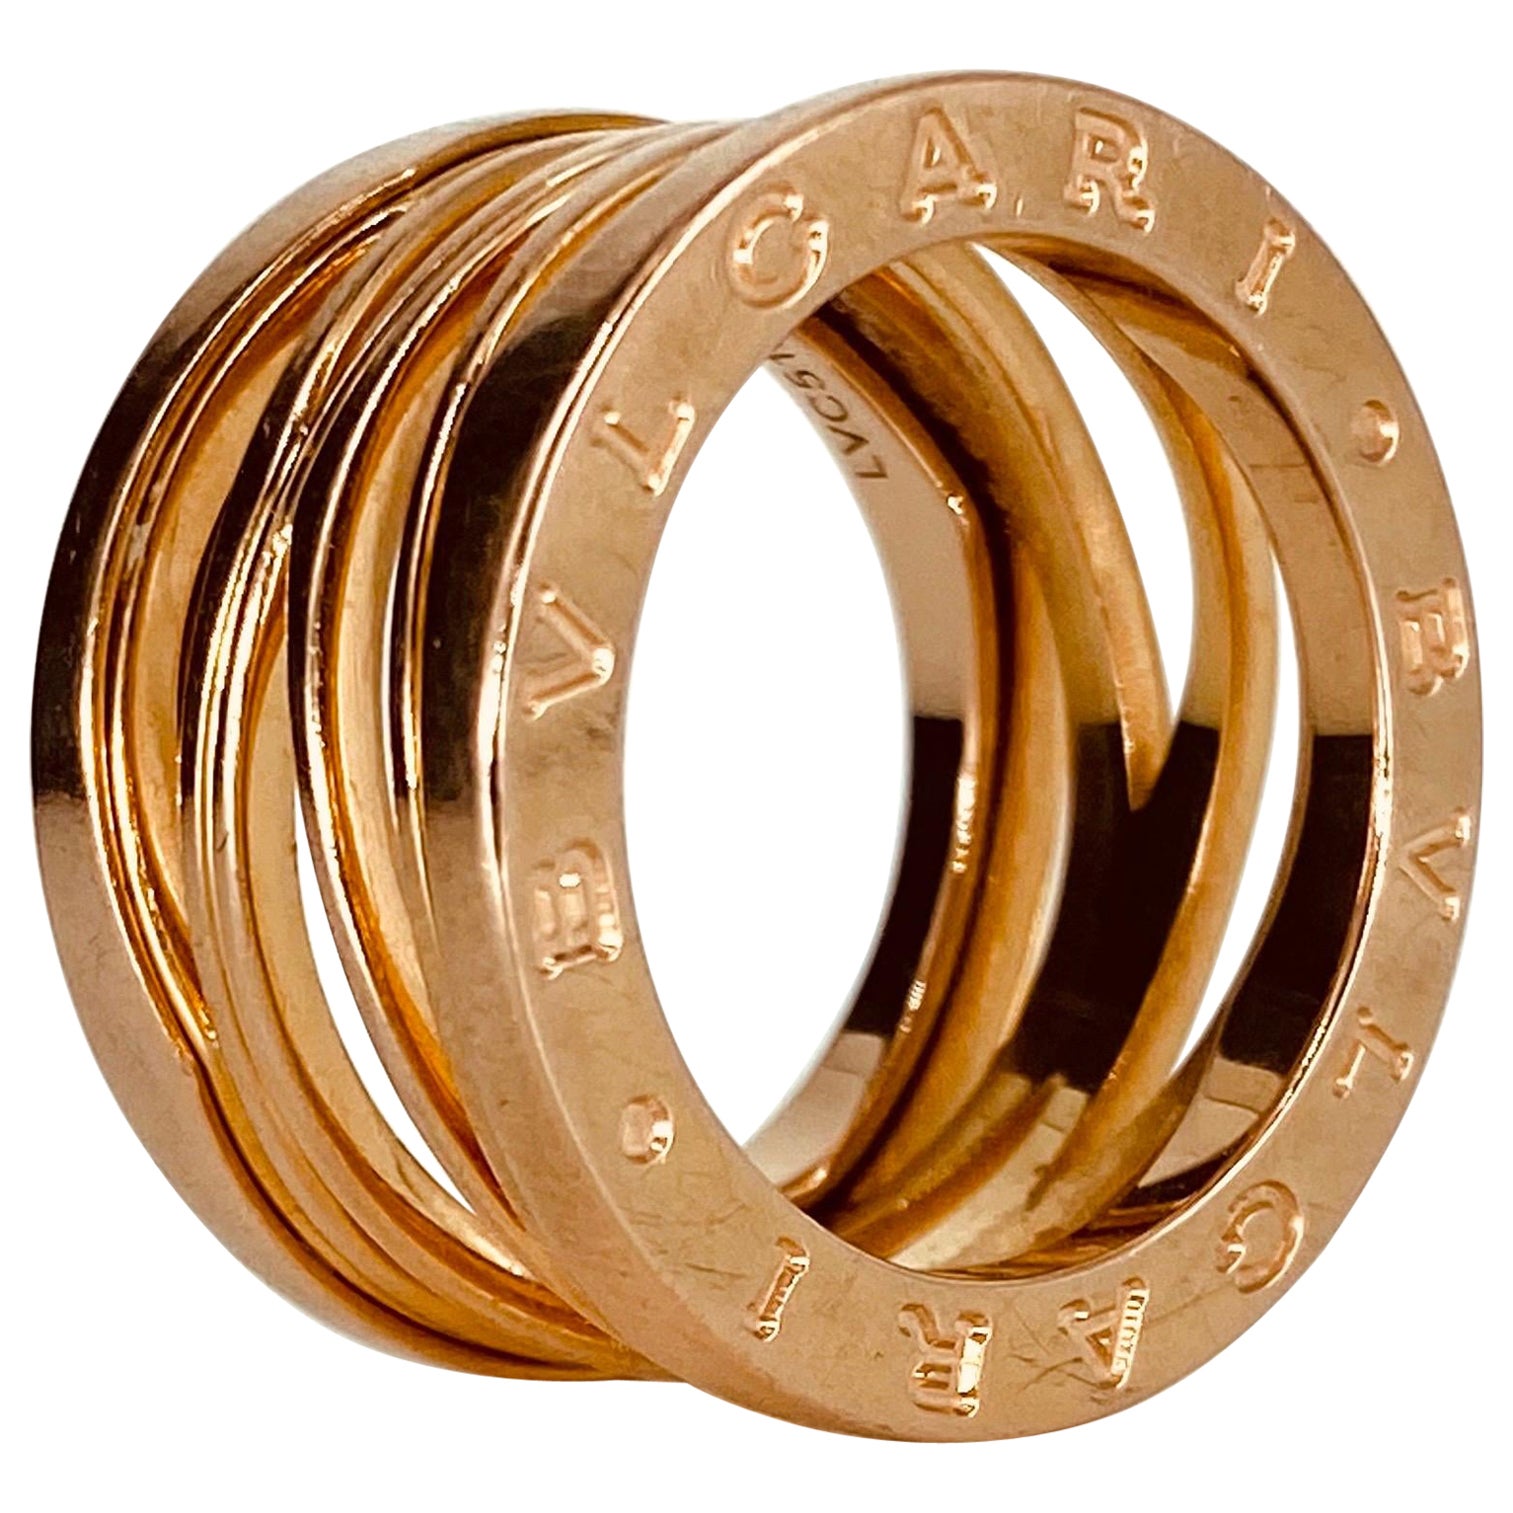 Bvlgari 18k Rose Gold B ZERO1 3 Band Ring - Size 6